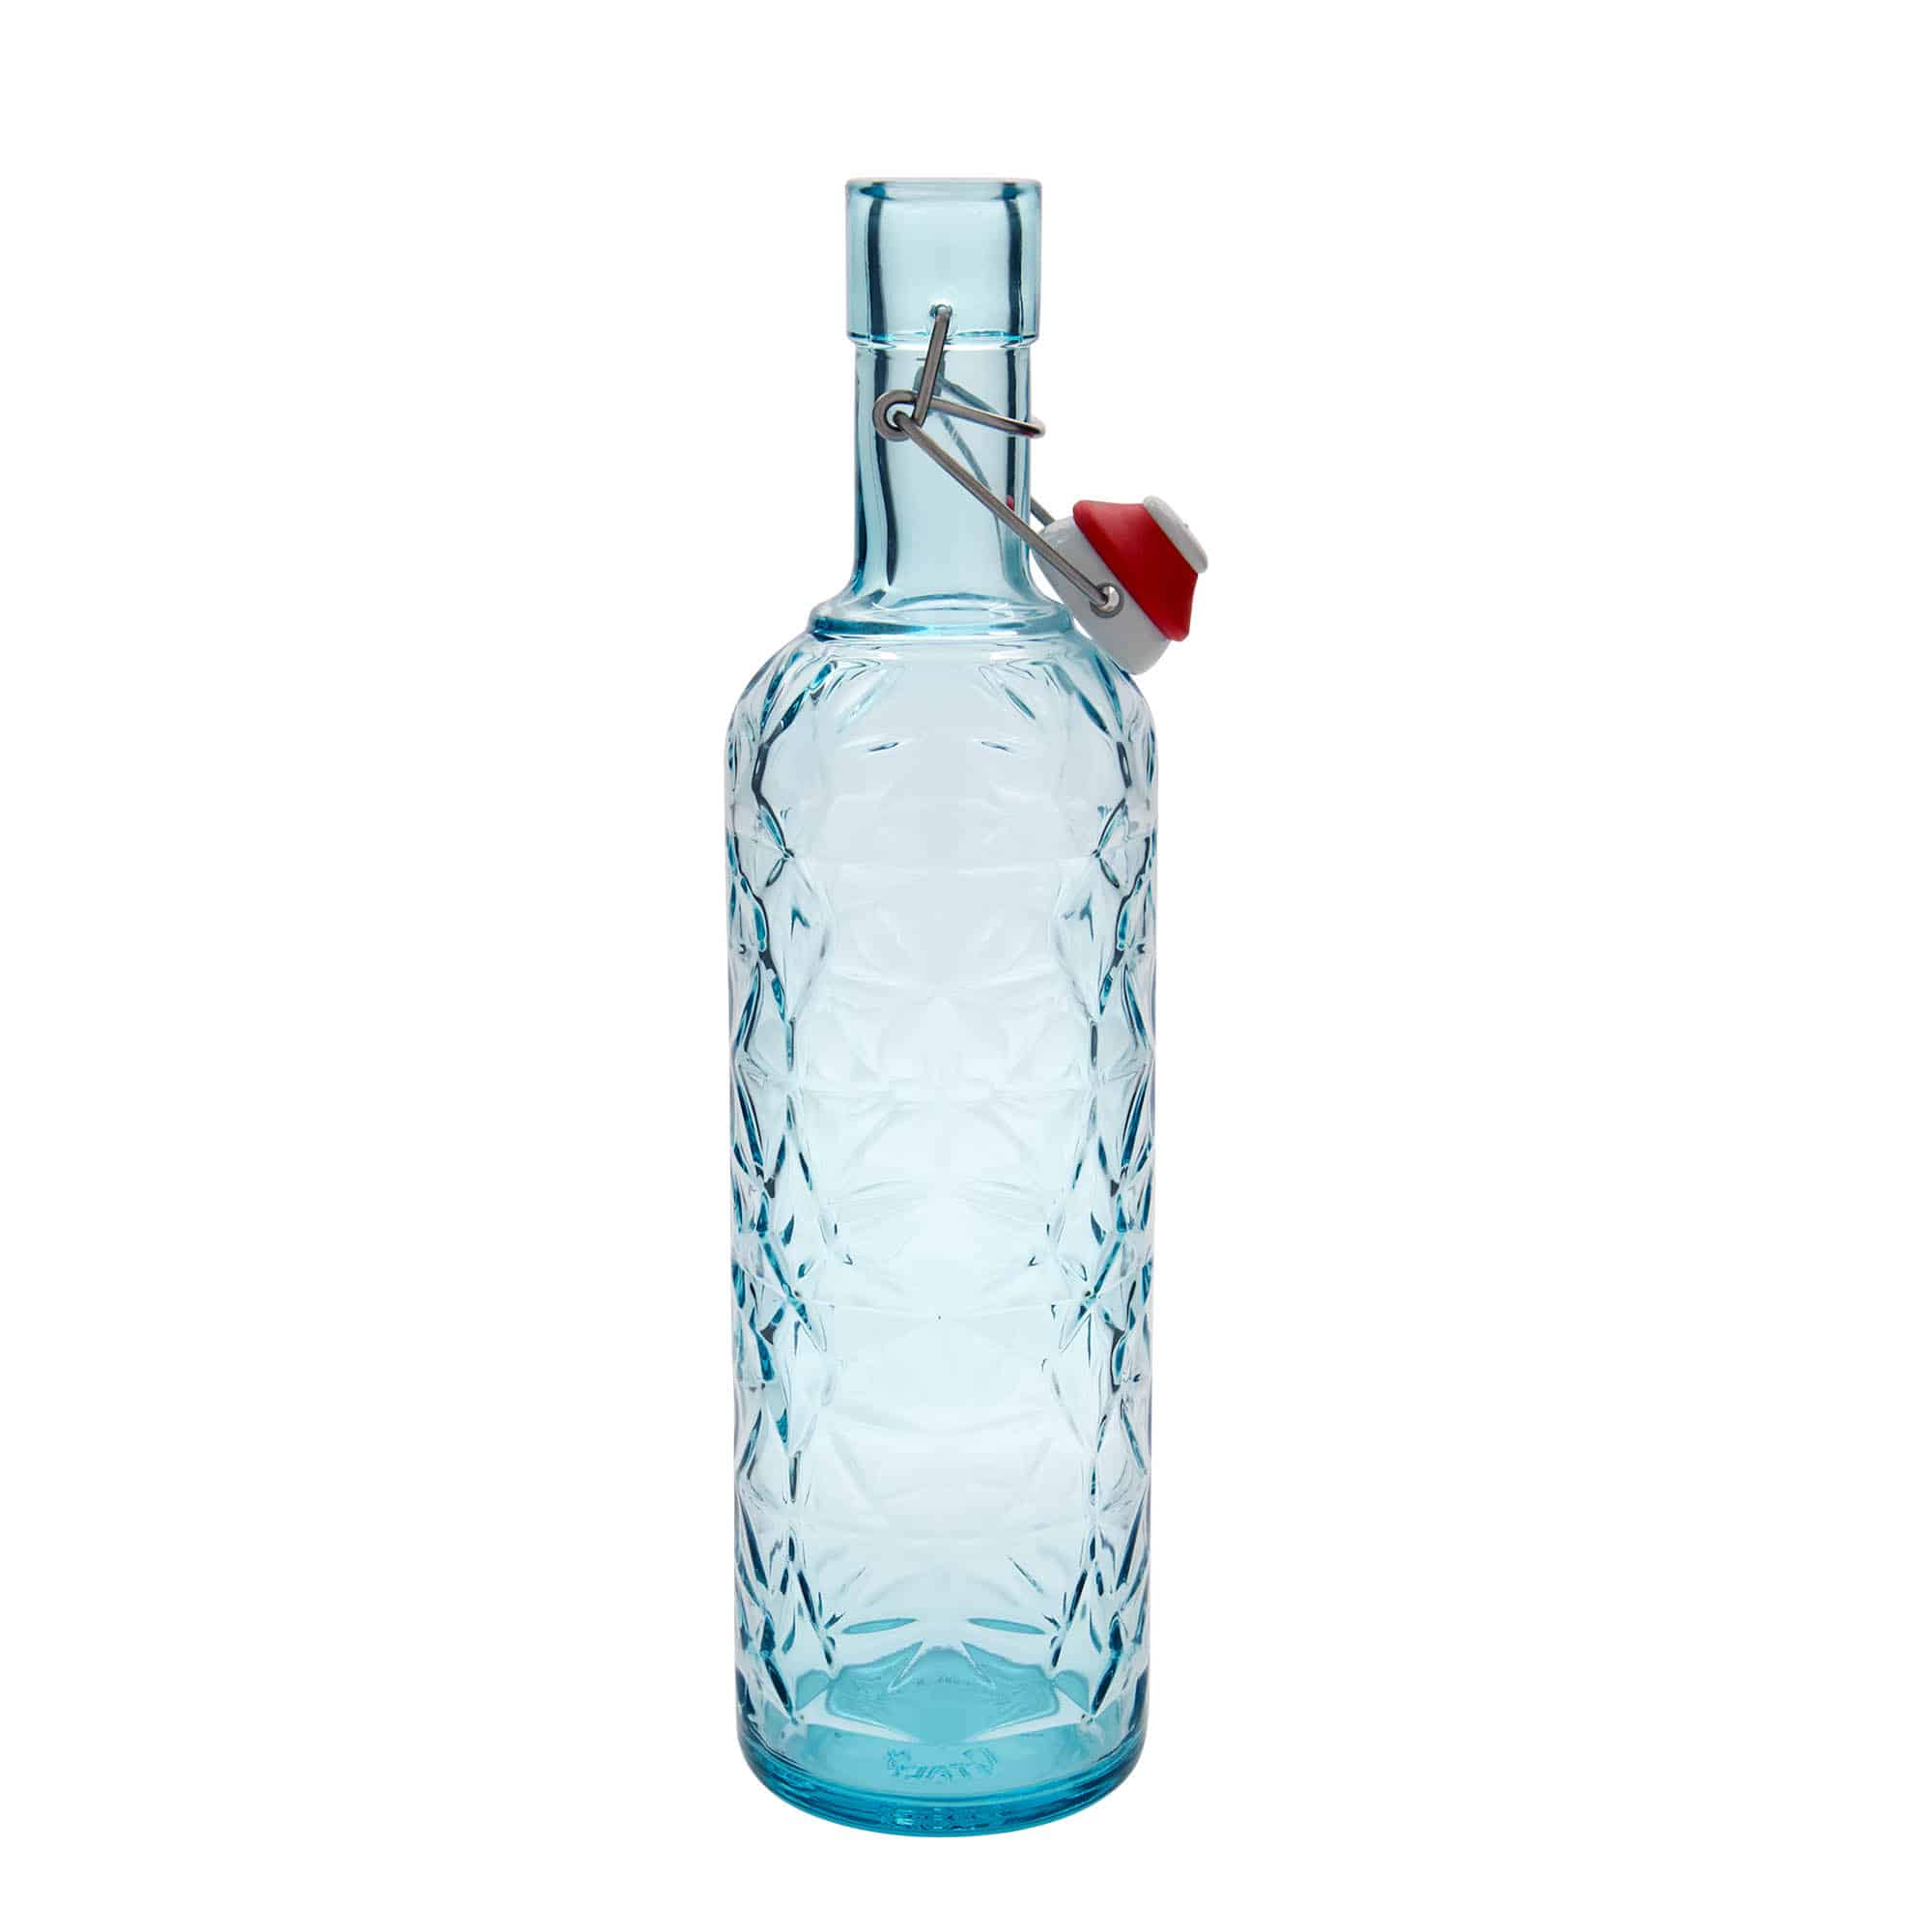 1,000 ml glass bottle 'Oriente', azure blue, closure: swing top